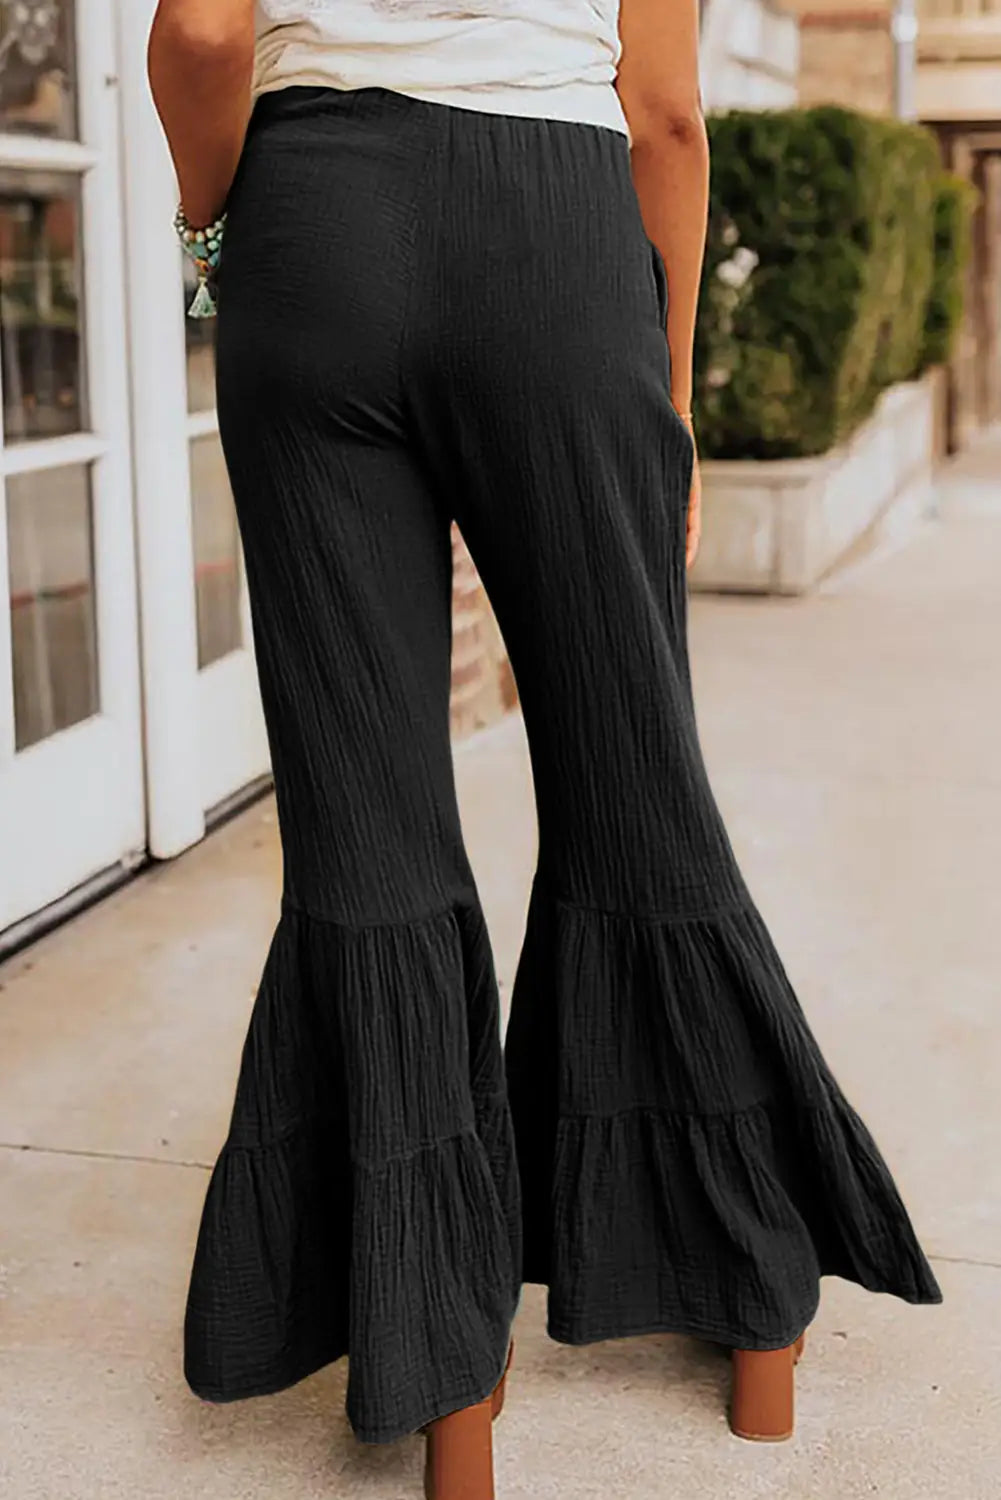 Black textured high waist ruffled bell bottom pants - wide leg